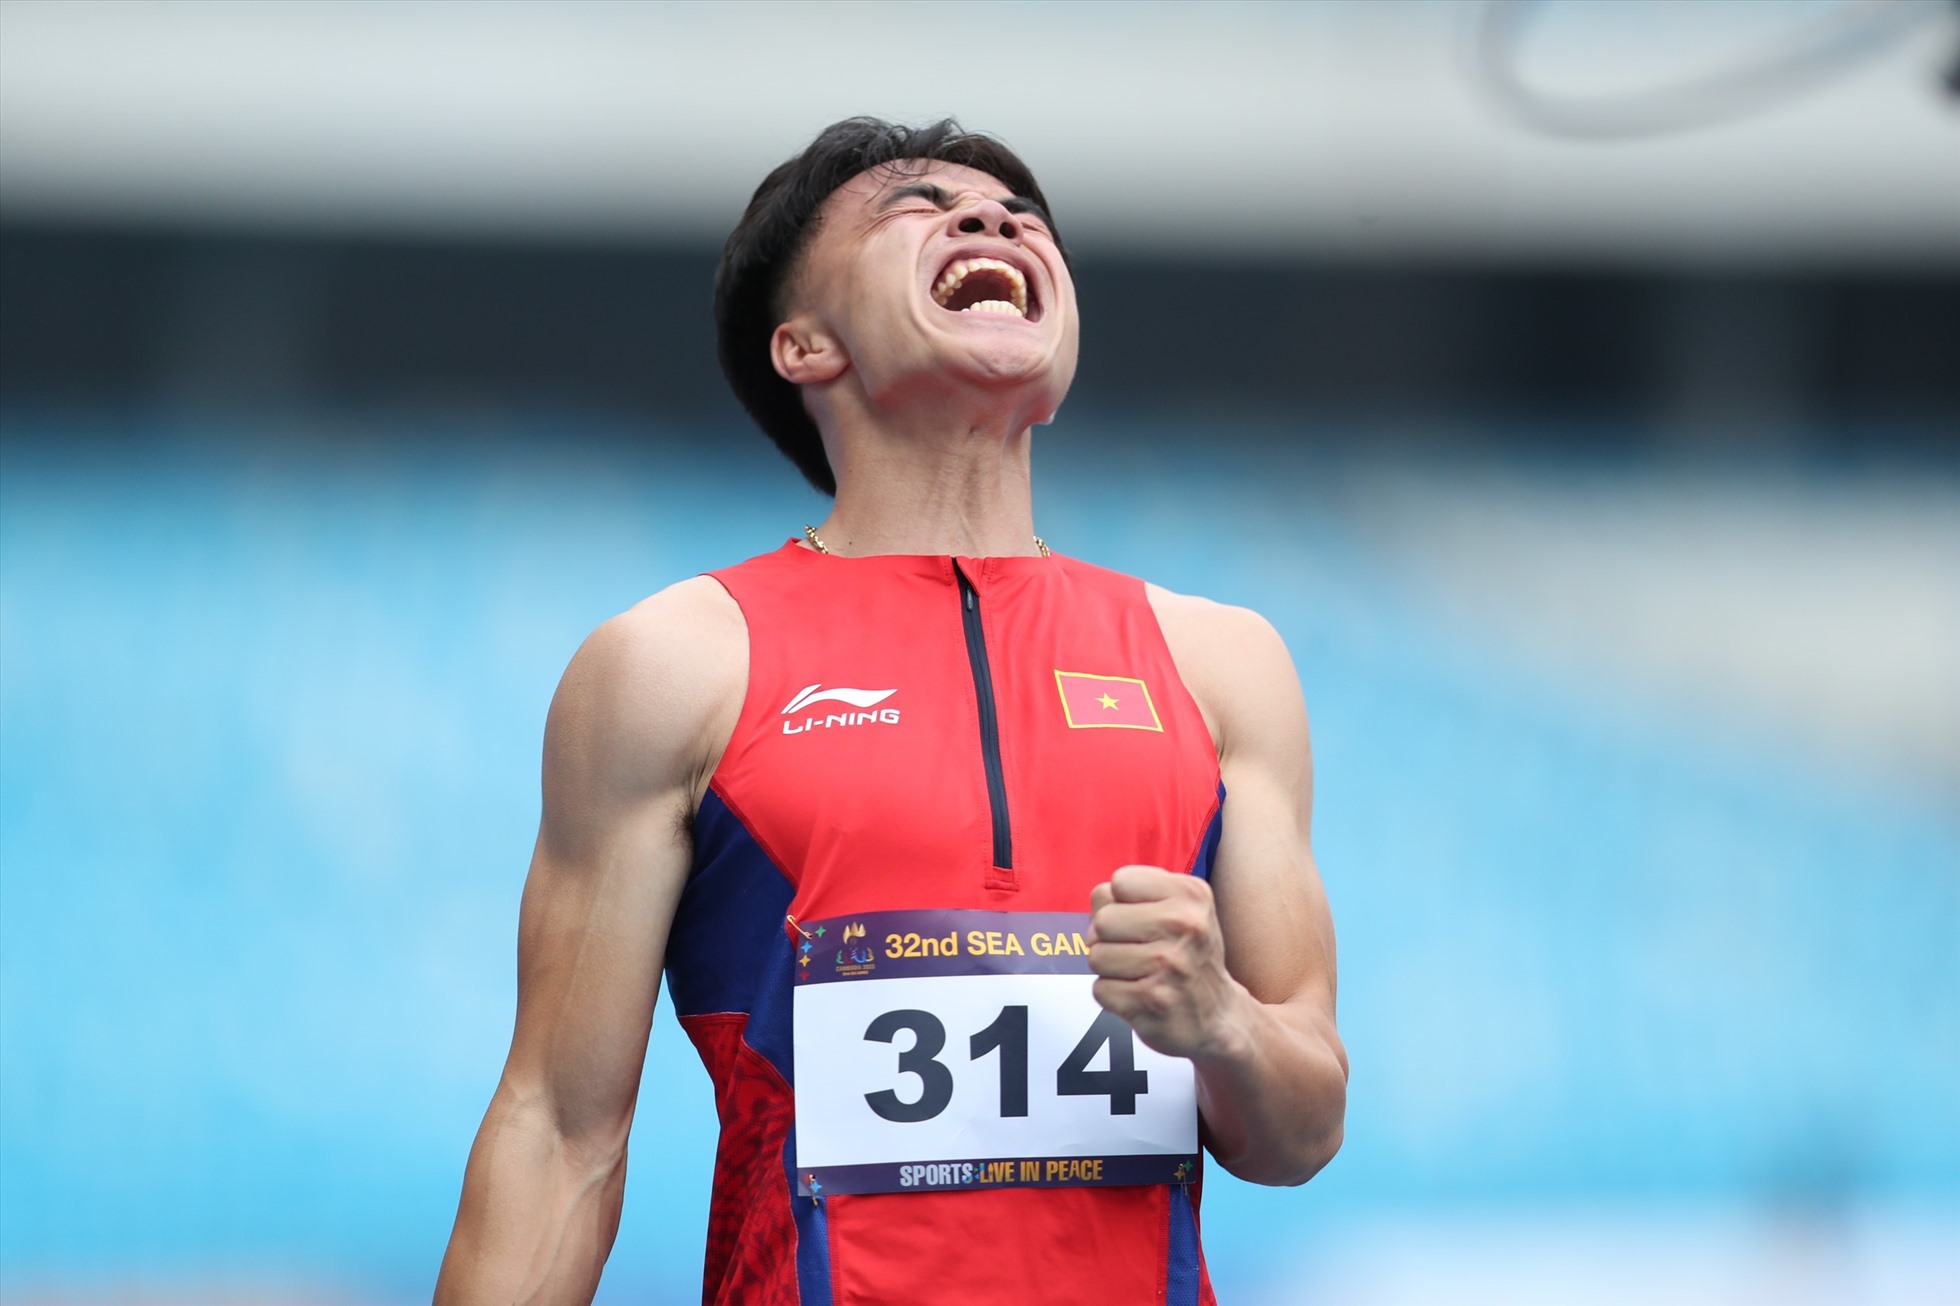 Ngần Ngọc Nghĩa bảo vệ thành công Huy chương Bạc 200m nam tại SEA Games 32. Ảnh: Minh Phong